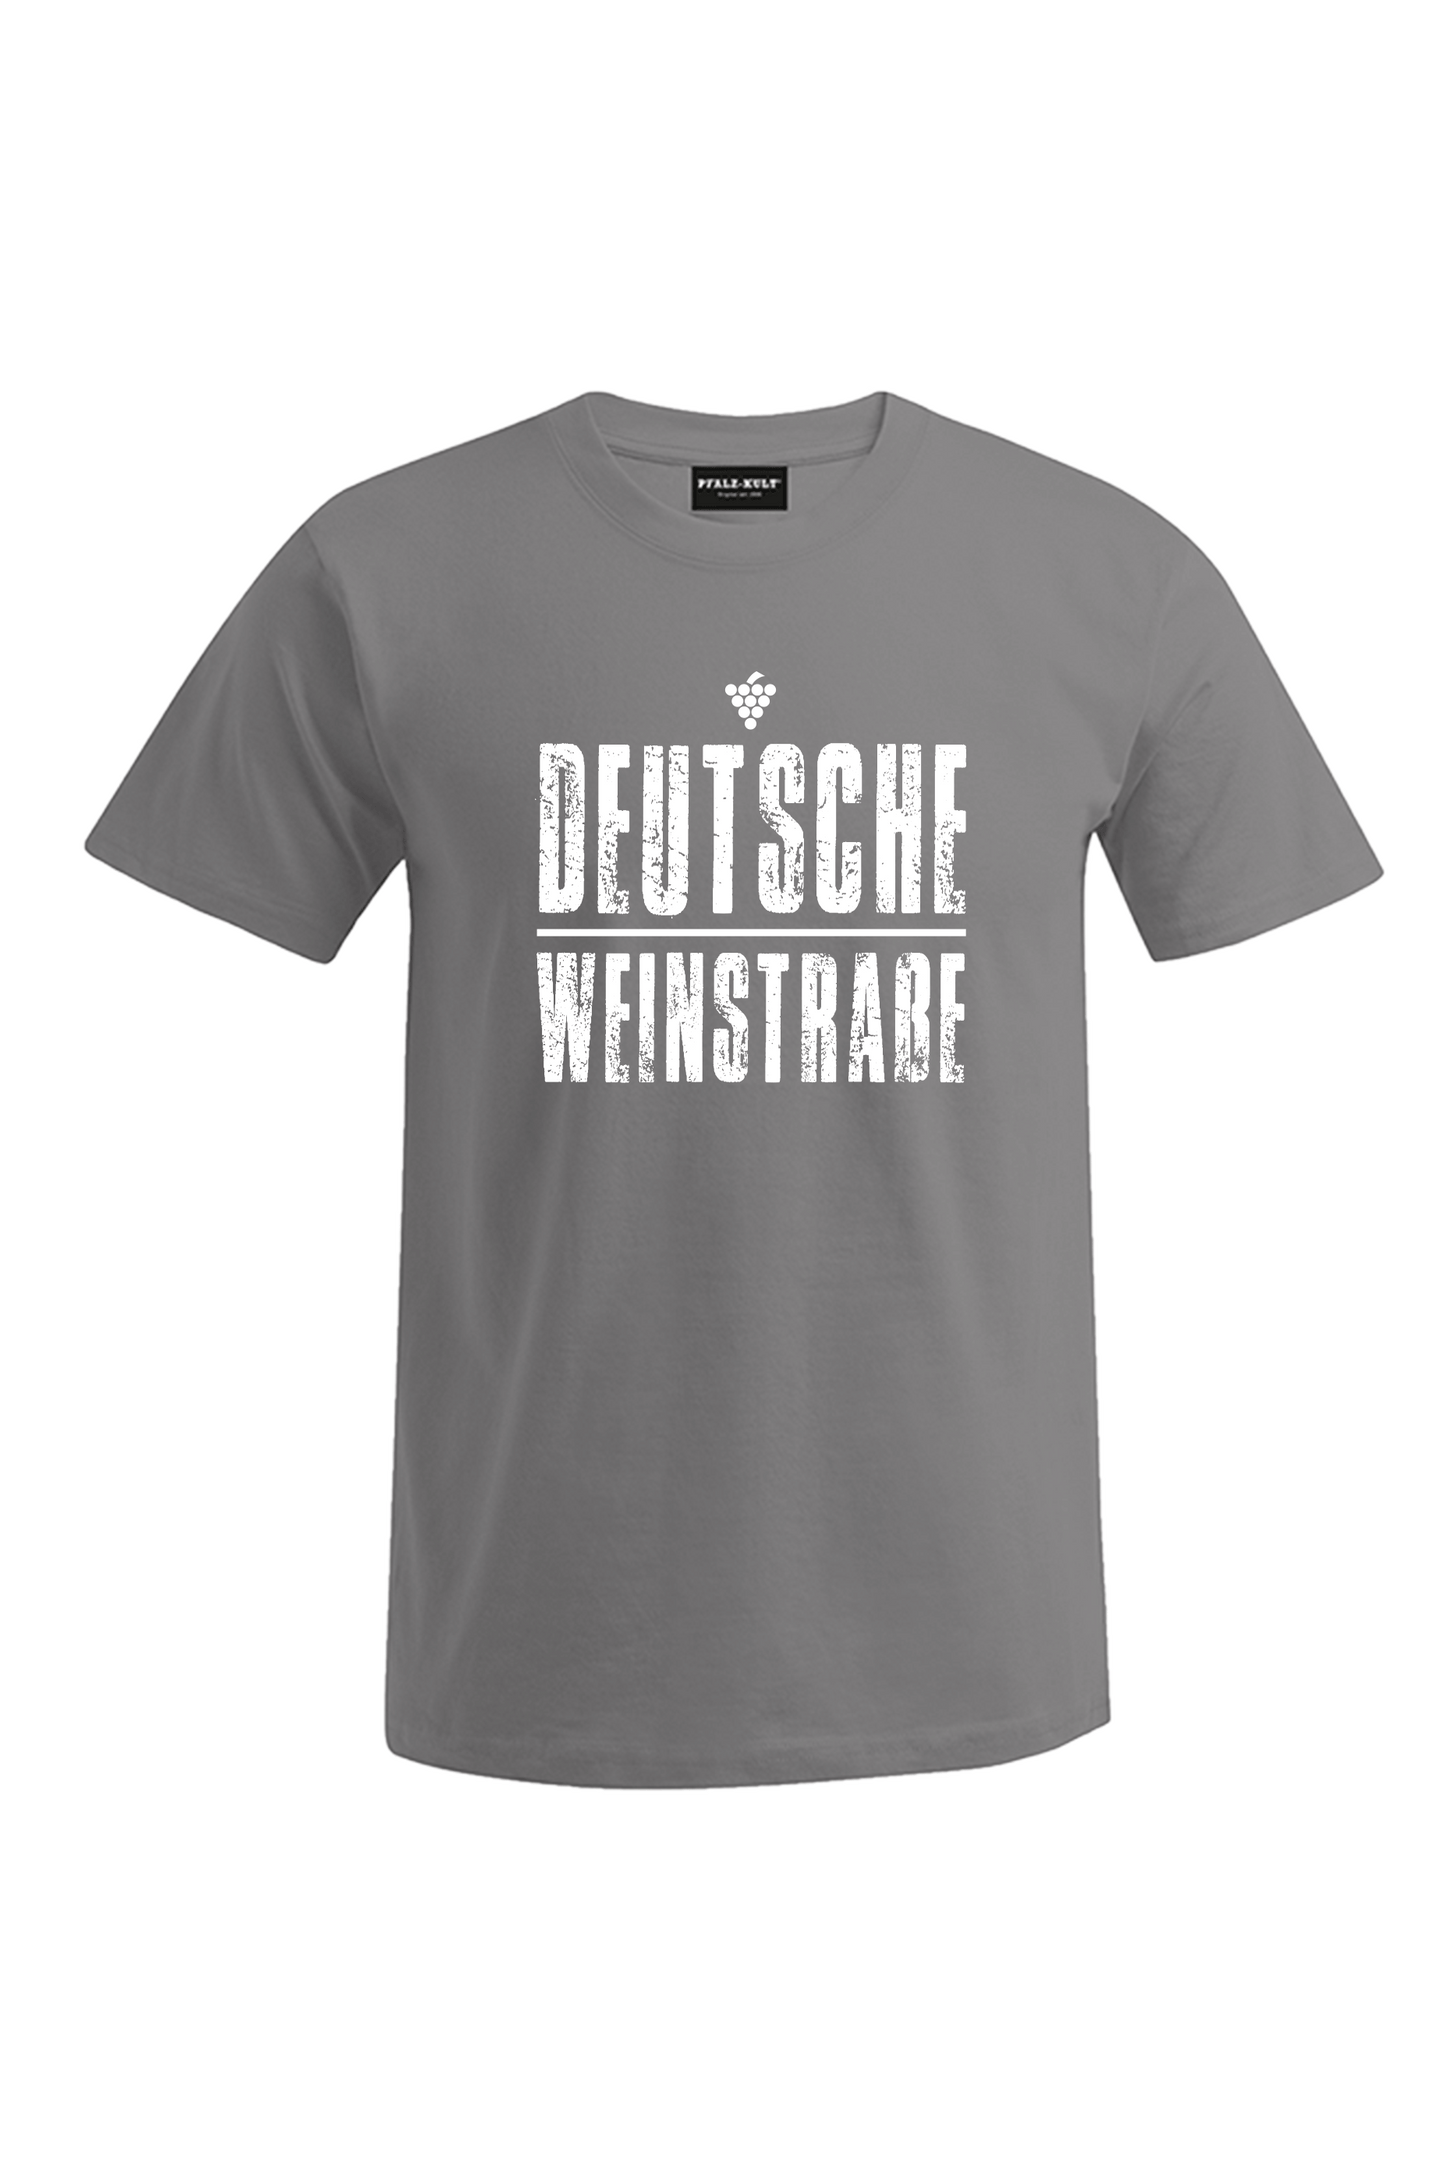 Graues T-Shirt mit dem Aufdruck "Deutsche Weinstrasse" .  Das ideale Geschenk für jedes Pfalzkind vom Textildruck Spezialisten aus Bad Dürkheim.